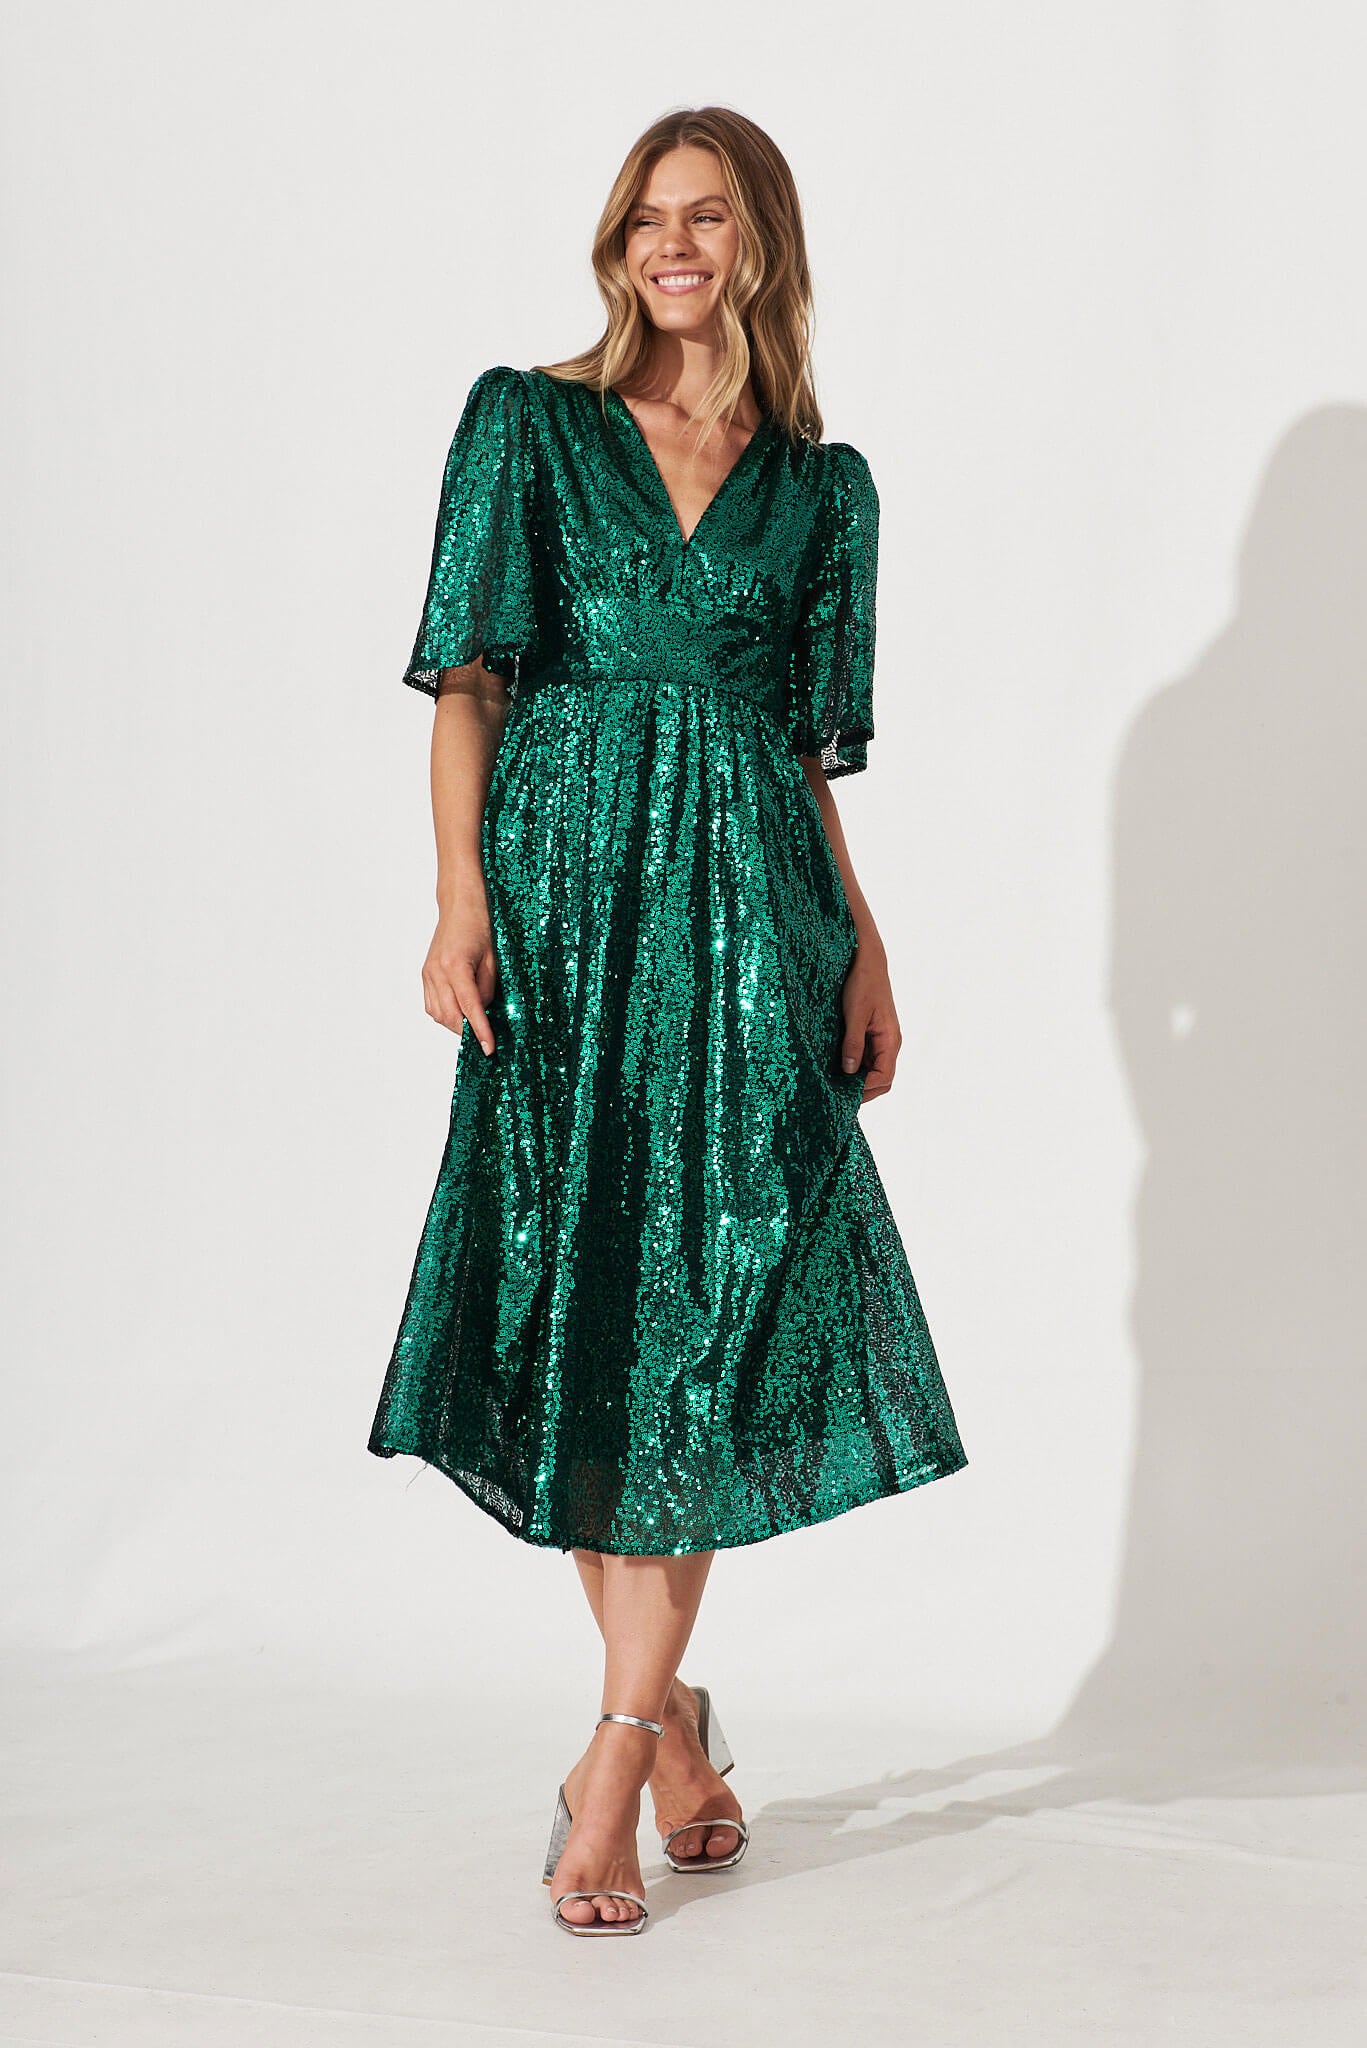 Livorno Midi Dress In Emerald Sequin - full length